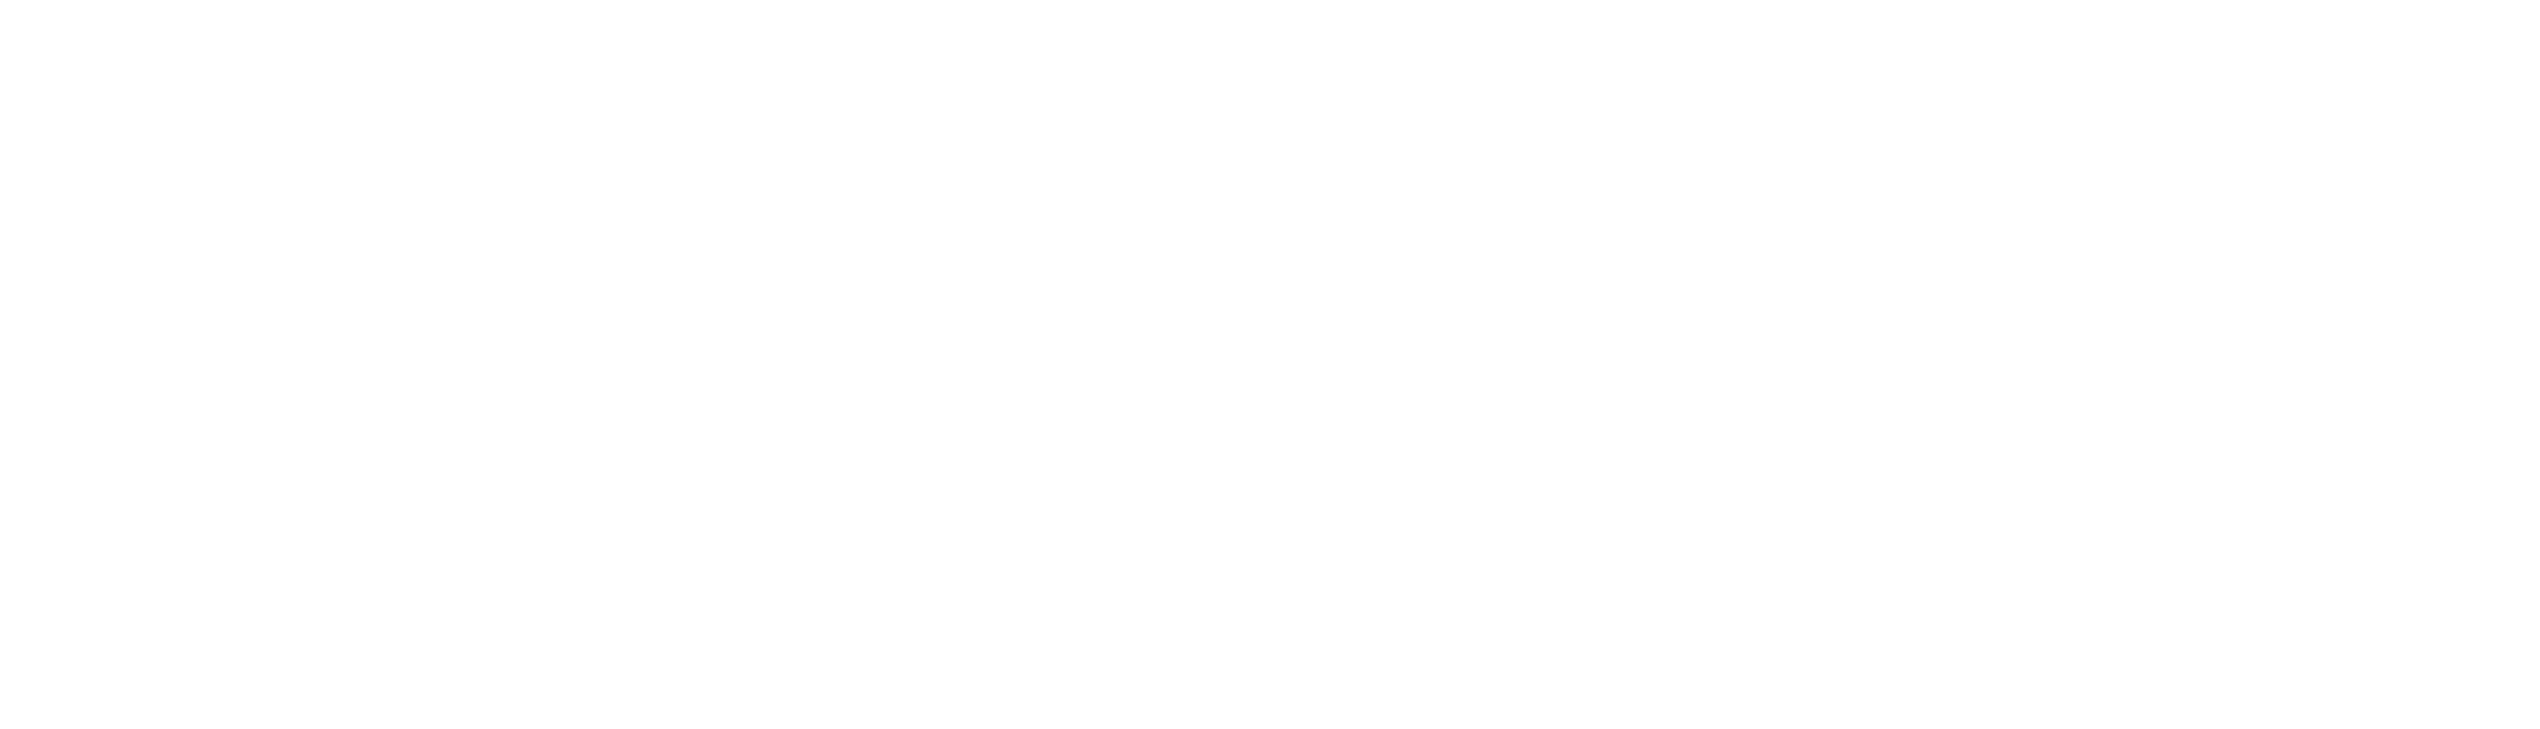 bingo-logo-long-main-negative-219x65-ai